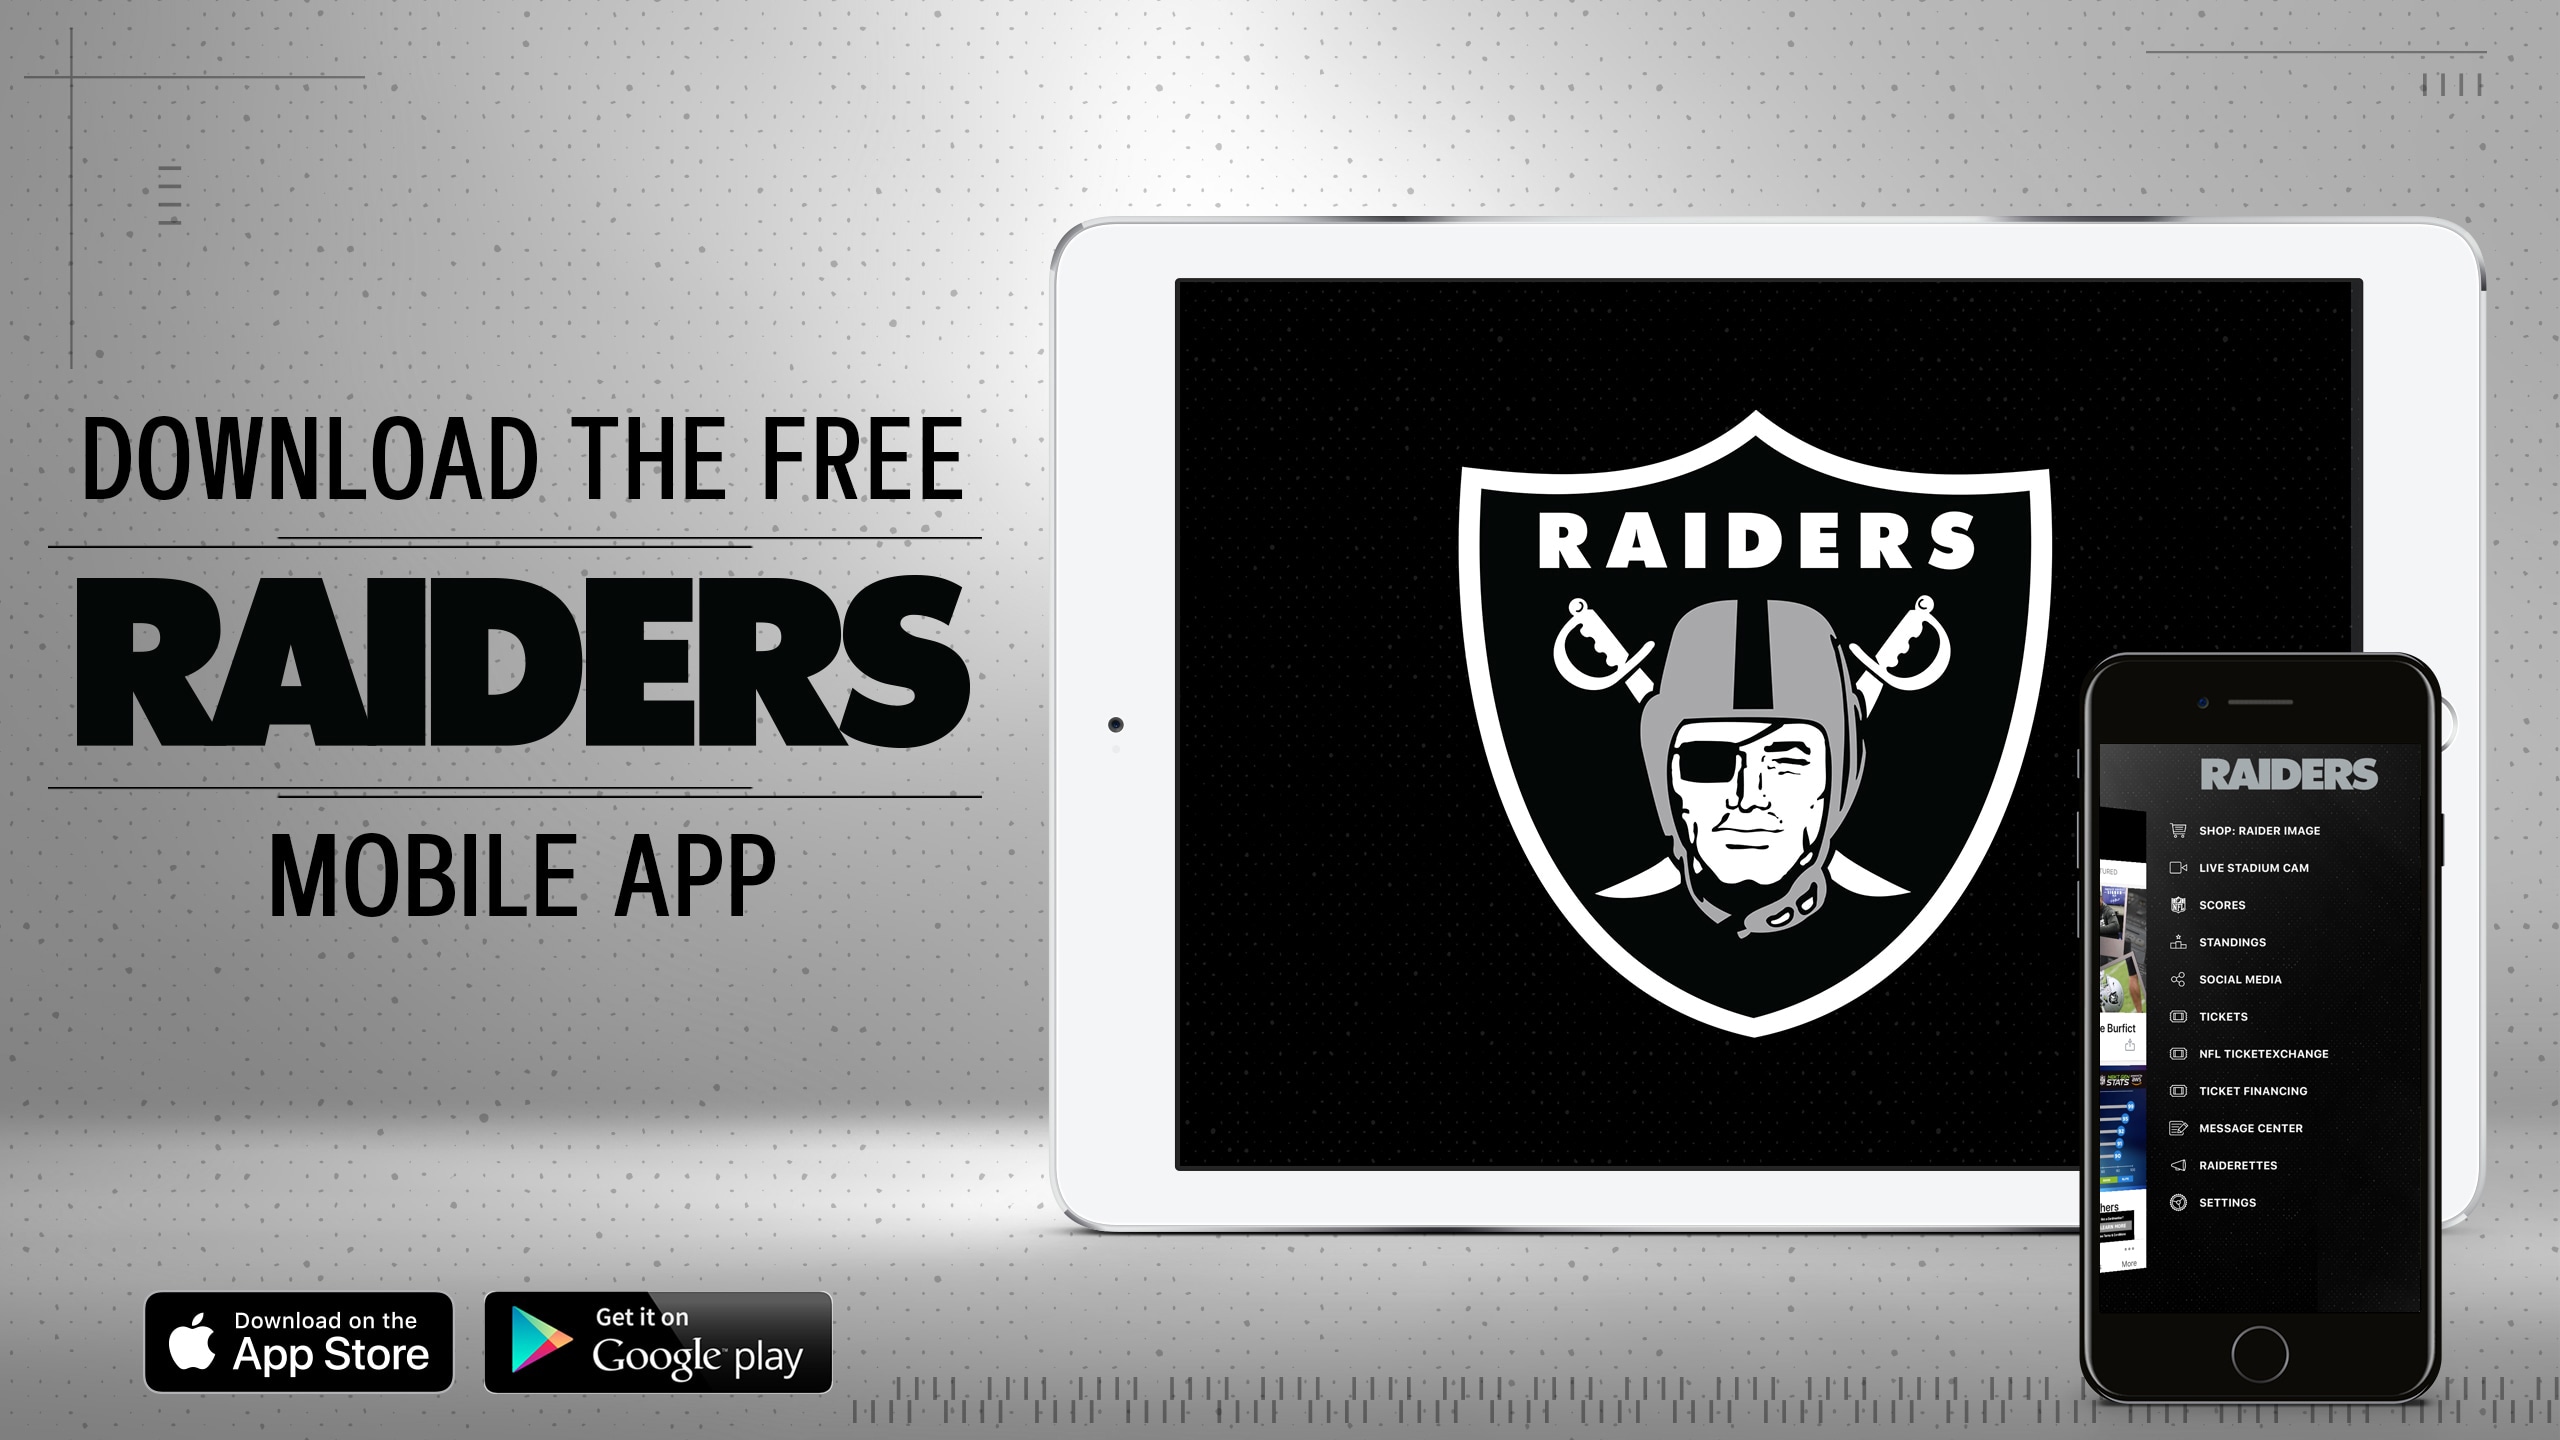 Official Mobile App Raiderscom